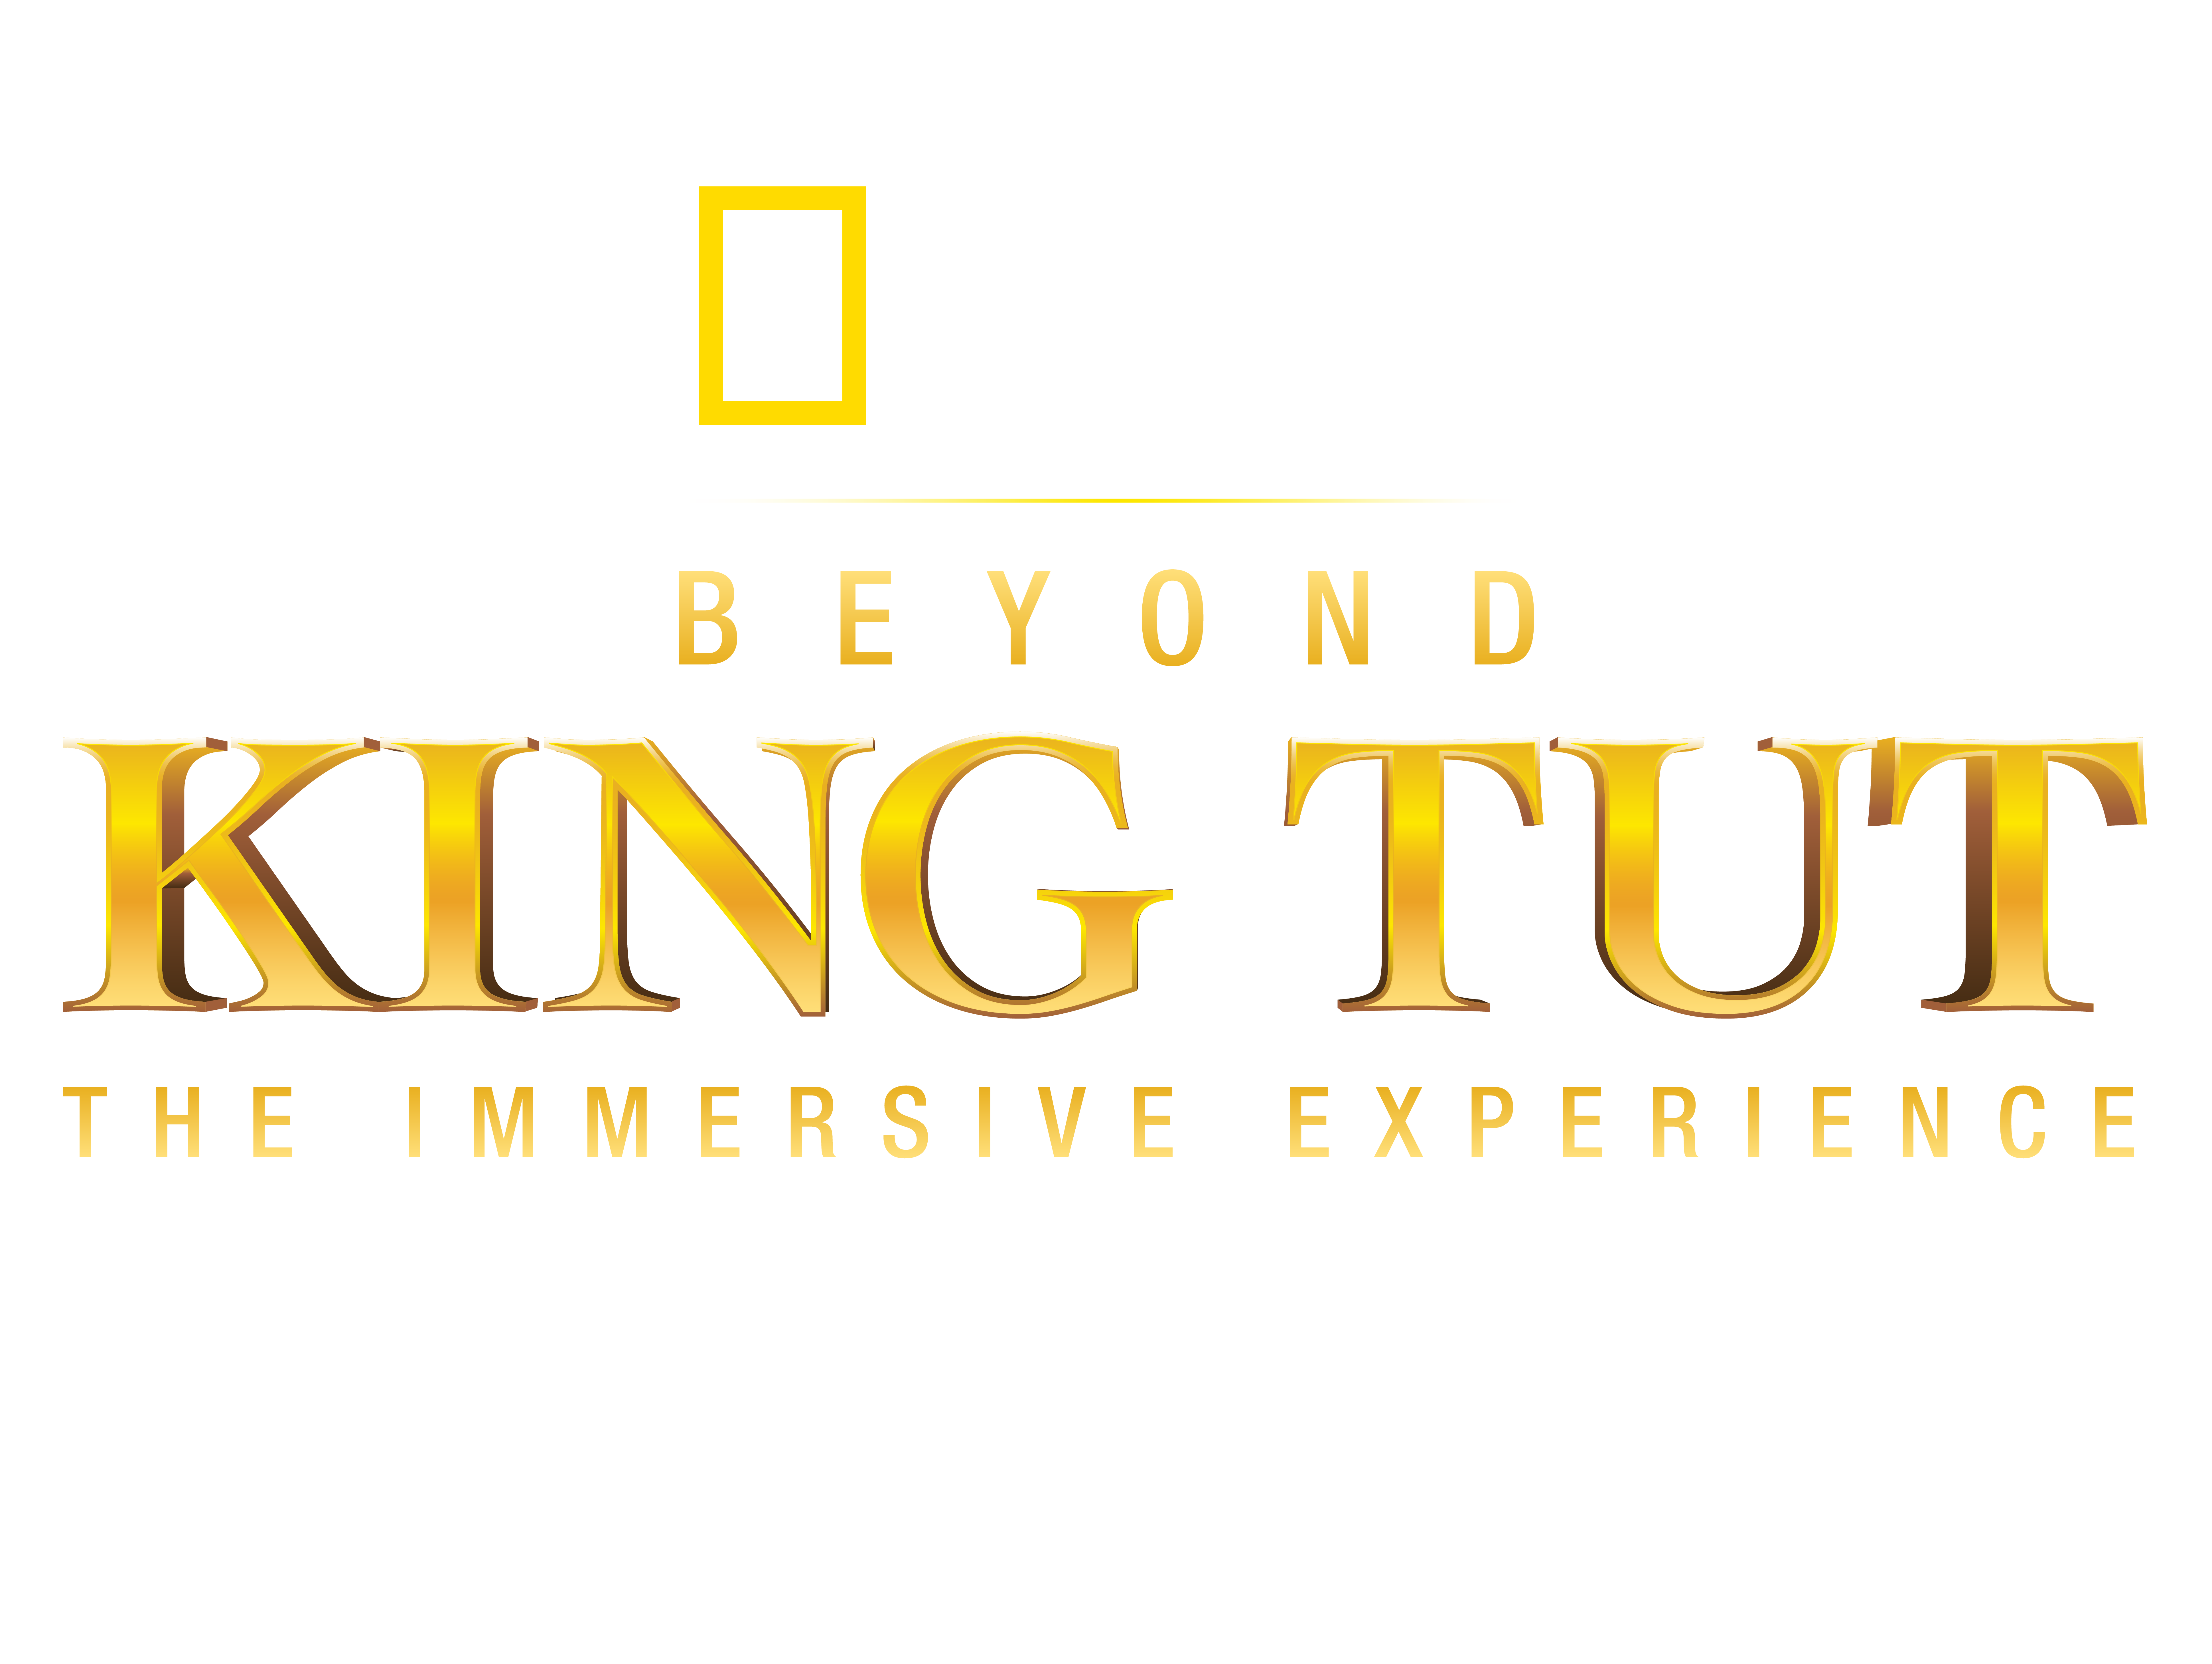 National Geographic's Beyond King Tut Boston Logo